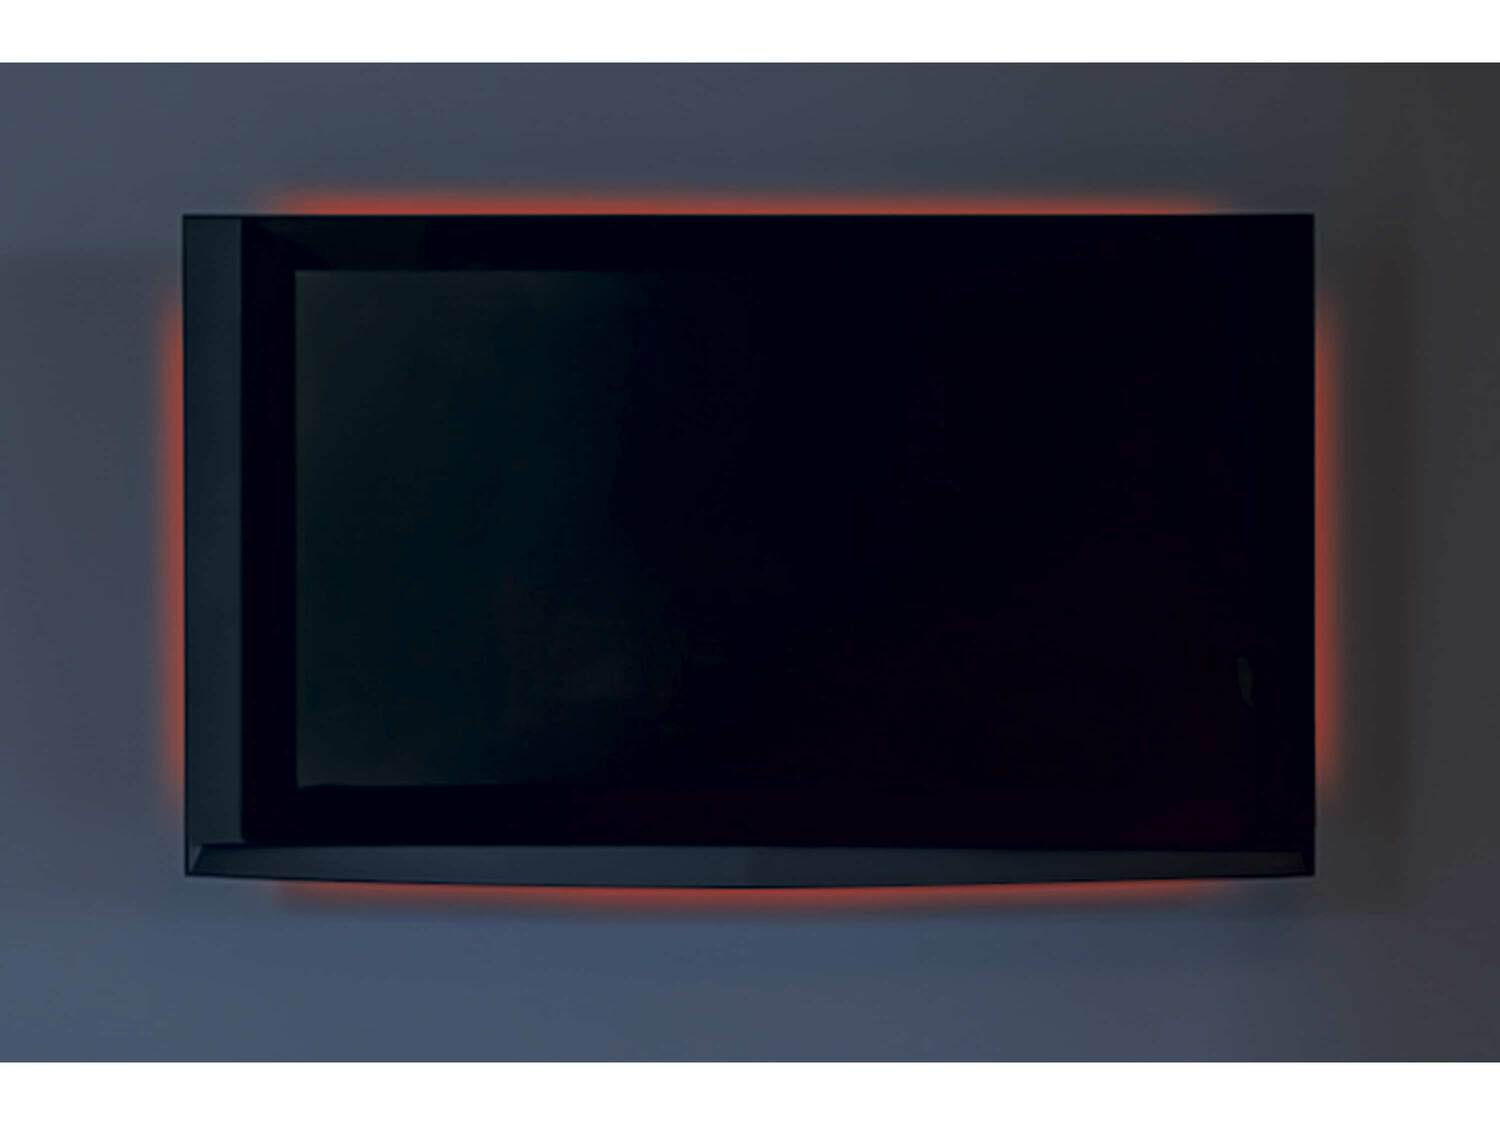 Oświetlenie LED panelu telewizora Livarno, cena 34,99 PLN 
- 4 samoprzylepne taśmy ...